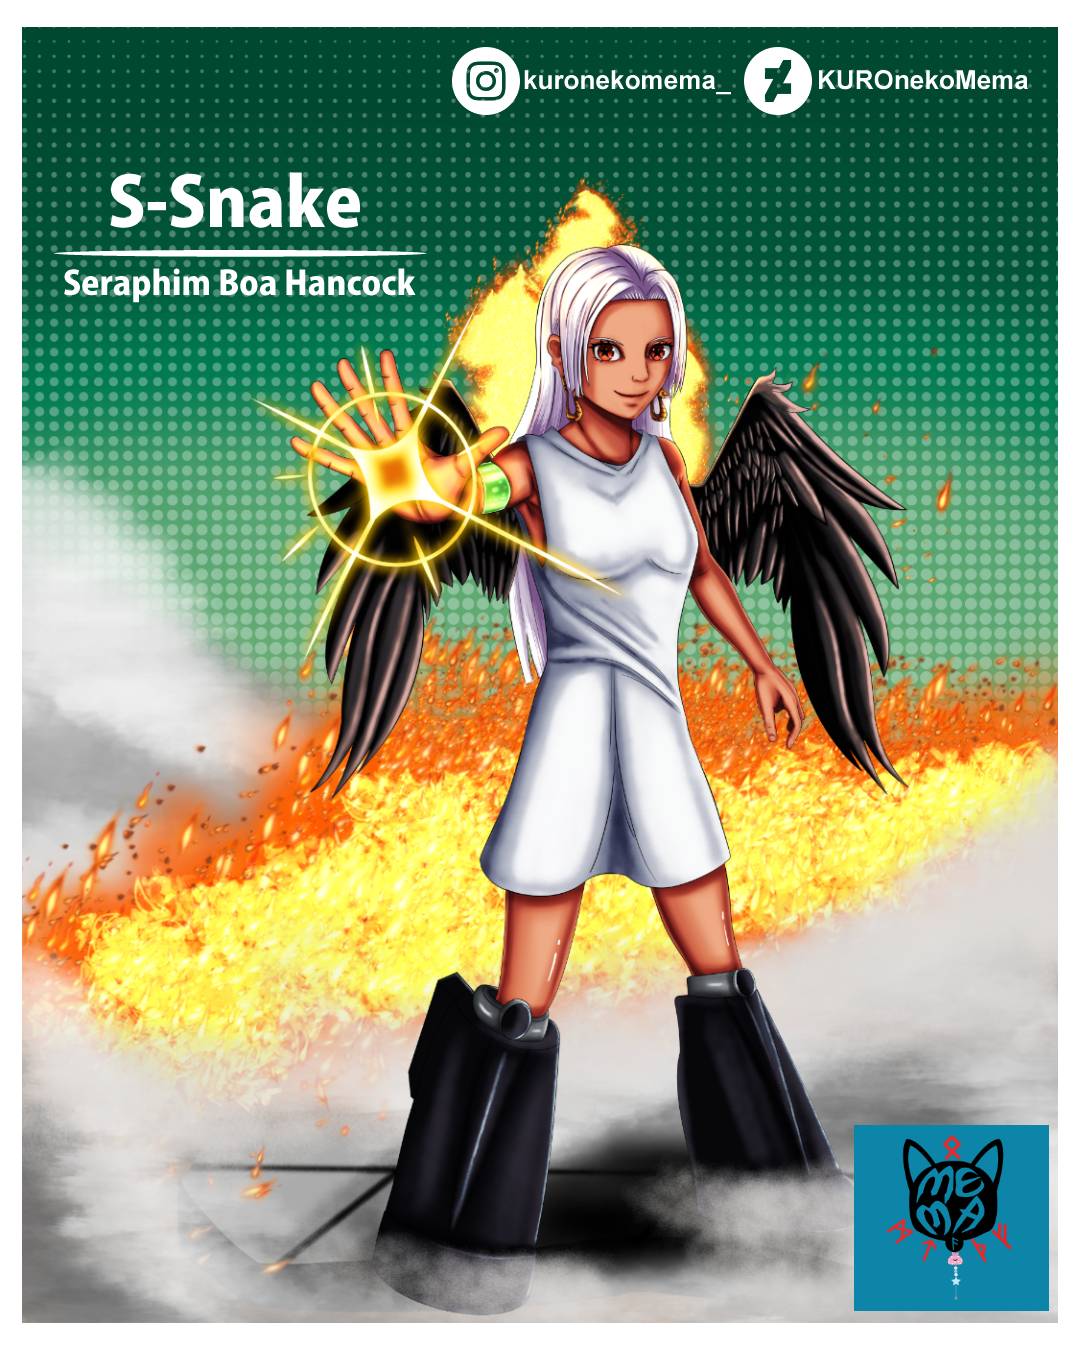 S-Snake, One Piece Wiki